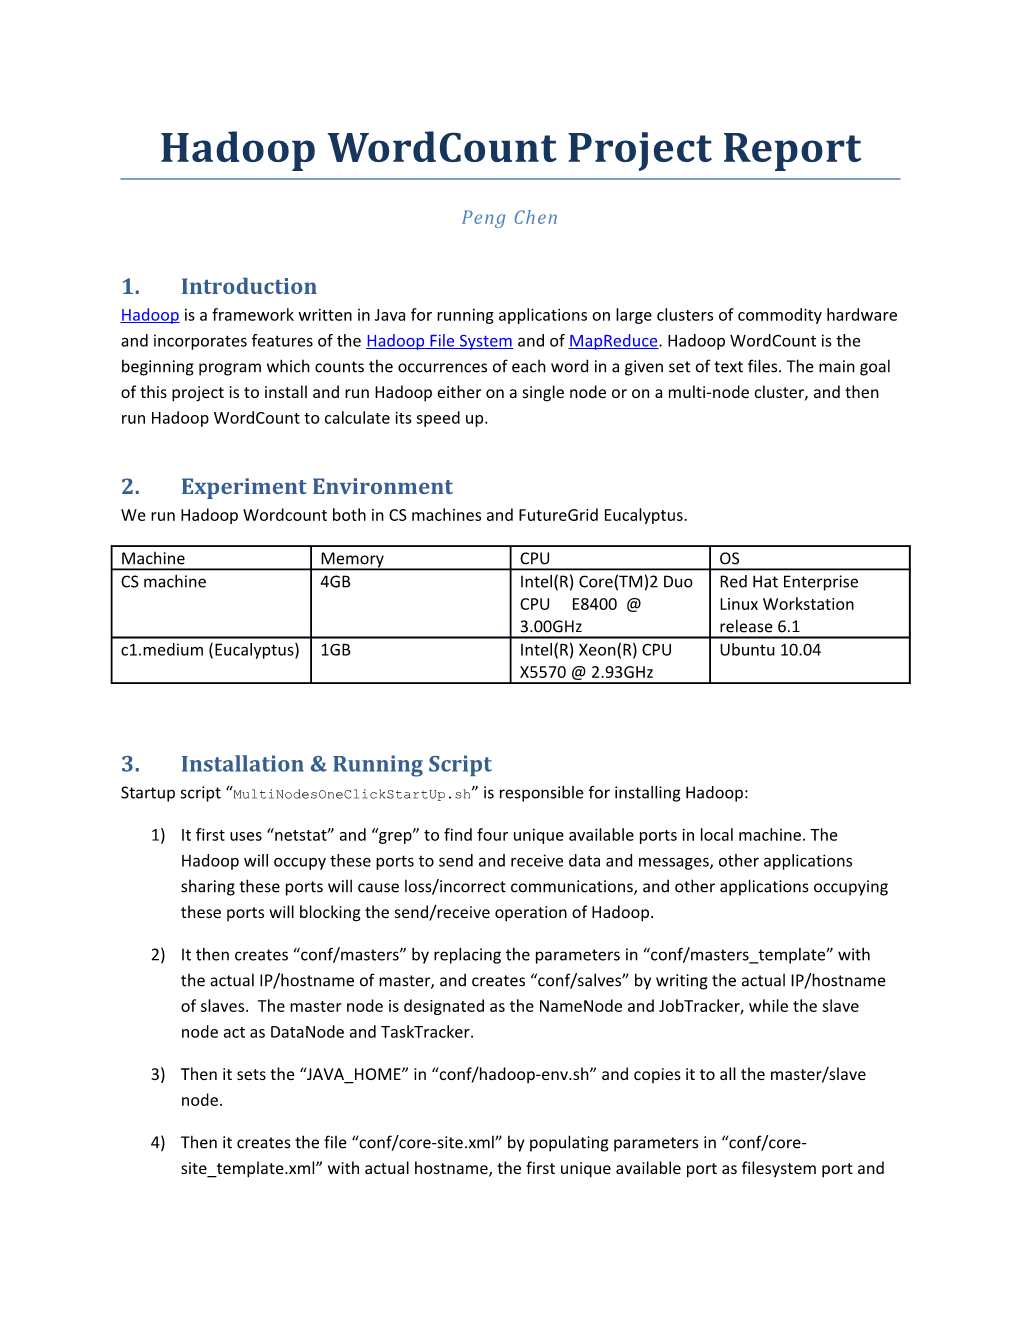 Hadoopwordcount Project Report